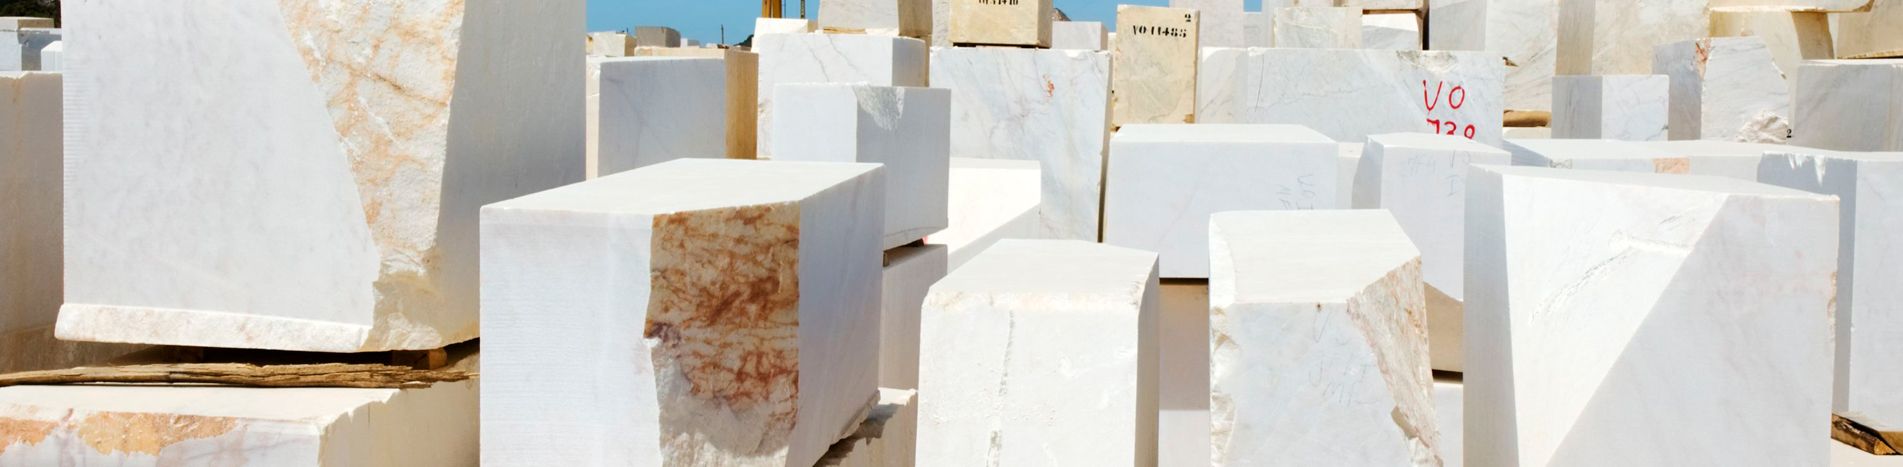 Empresa de piedra y mármol en Soria